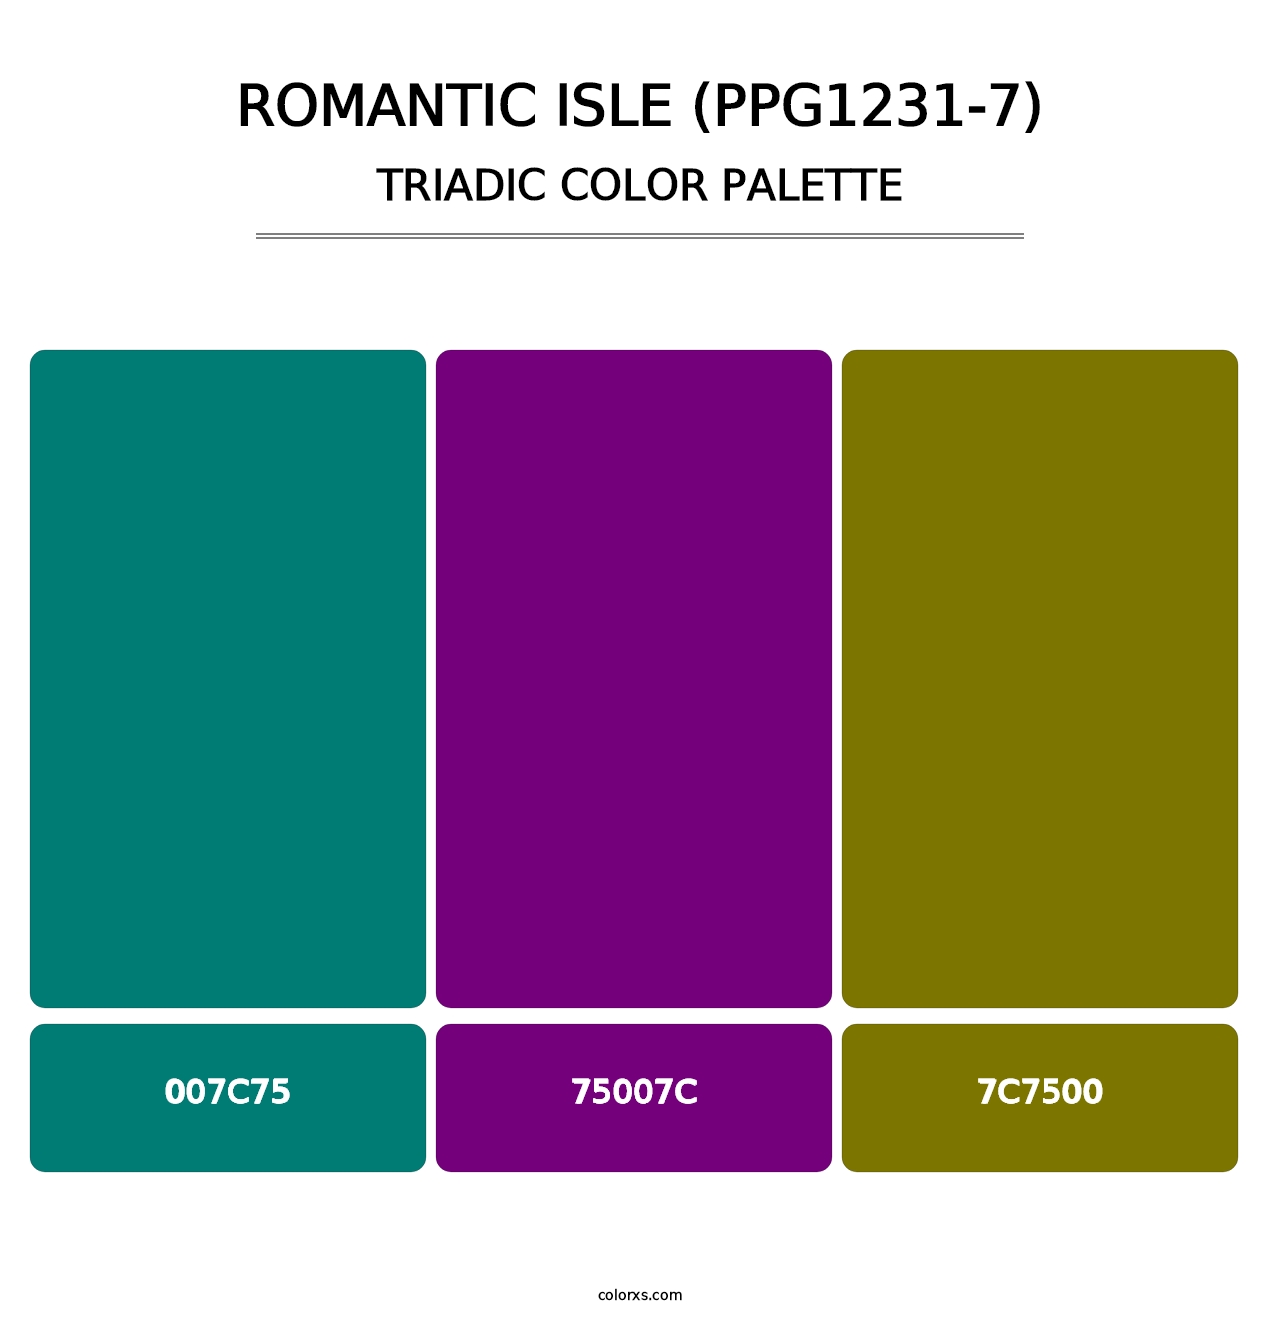 Romantic Isle (PPG1231-7) - Triadic Color Palette